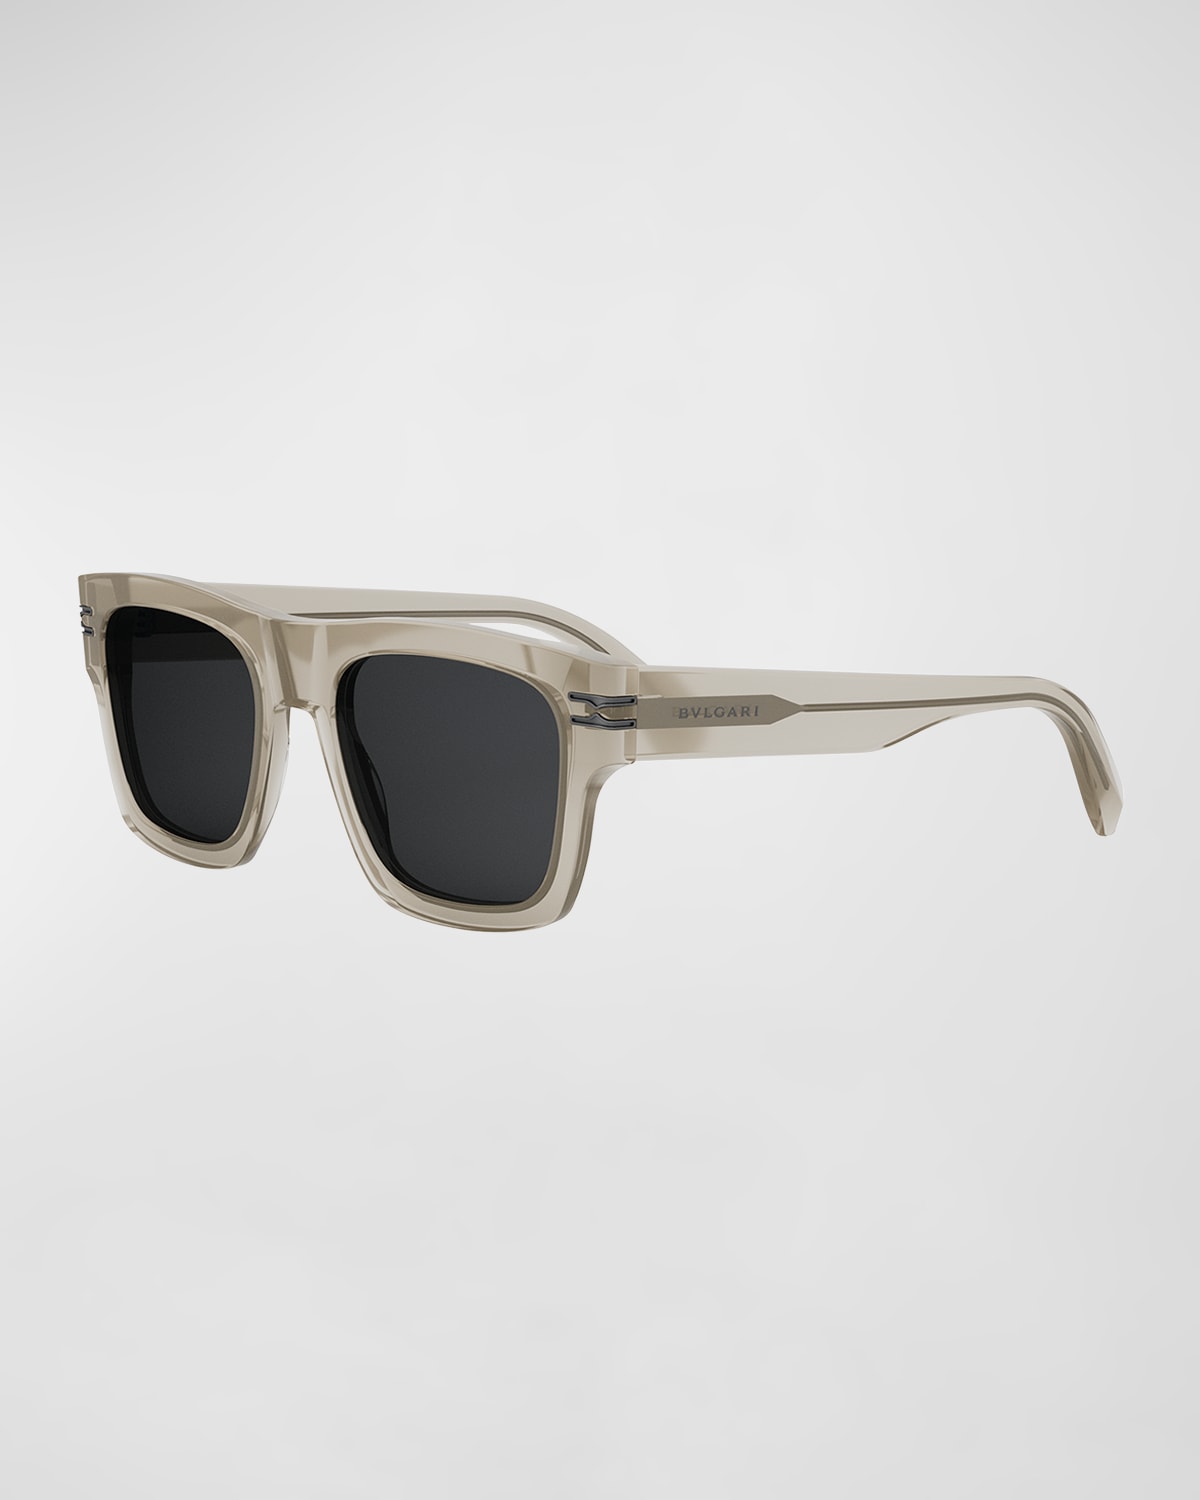 Bvlgari B.zero1 Geometric Sunglasses In Dark Brown